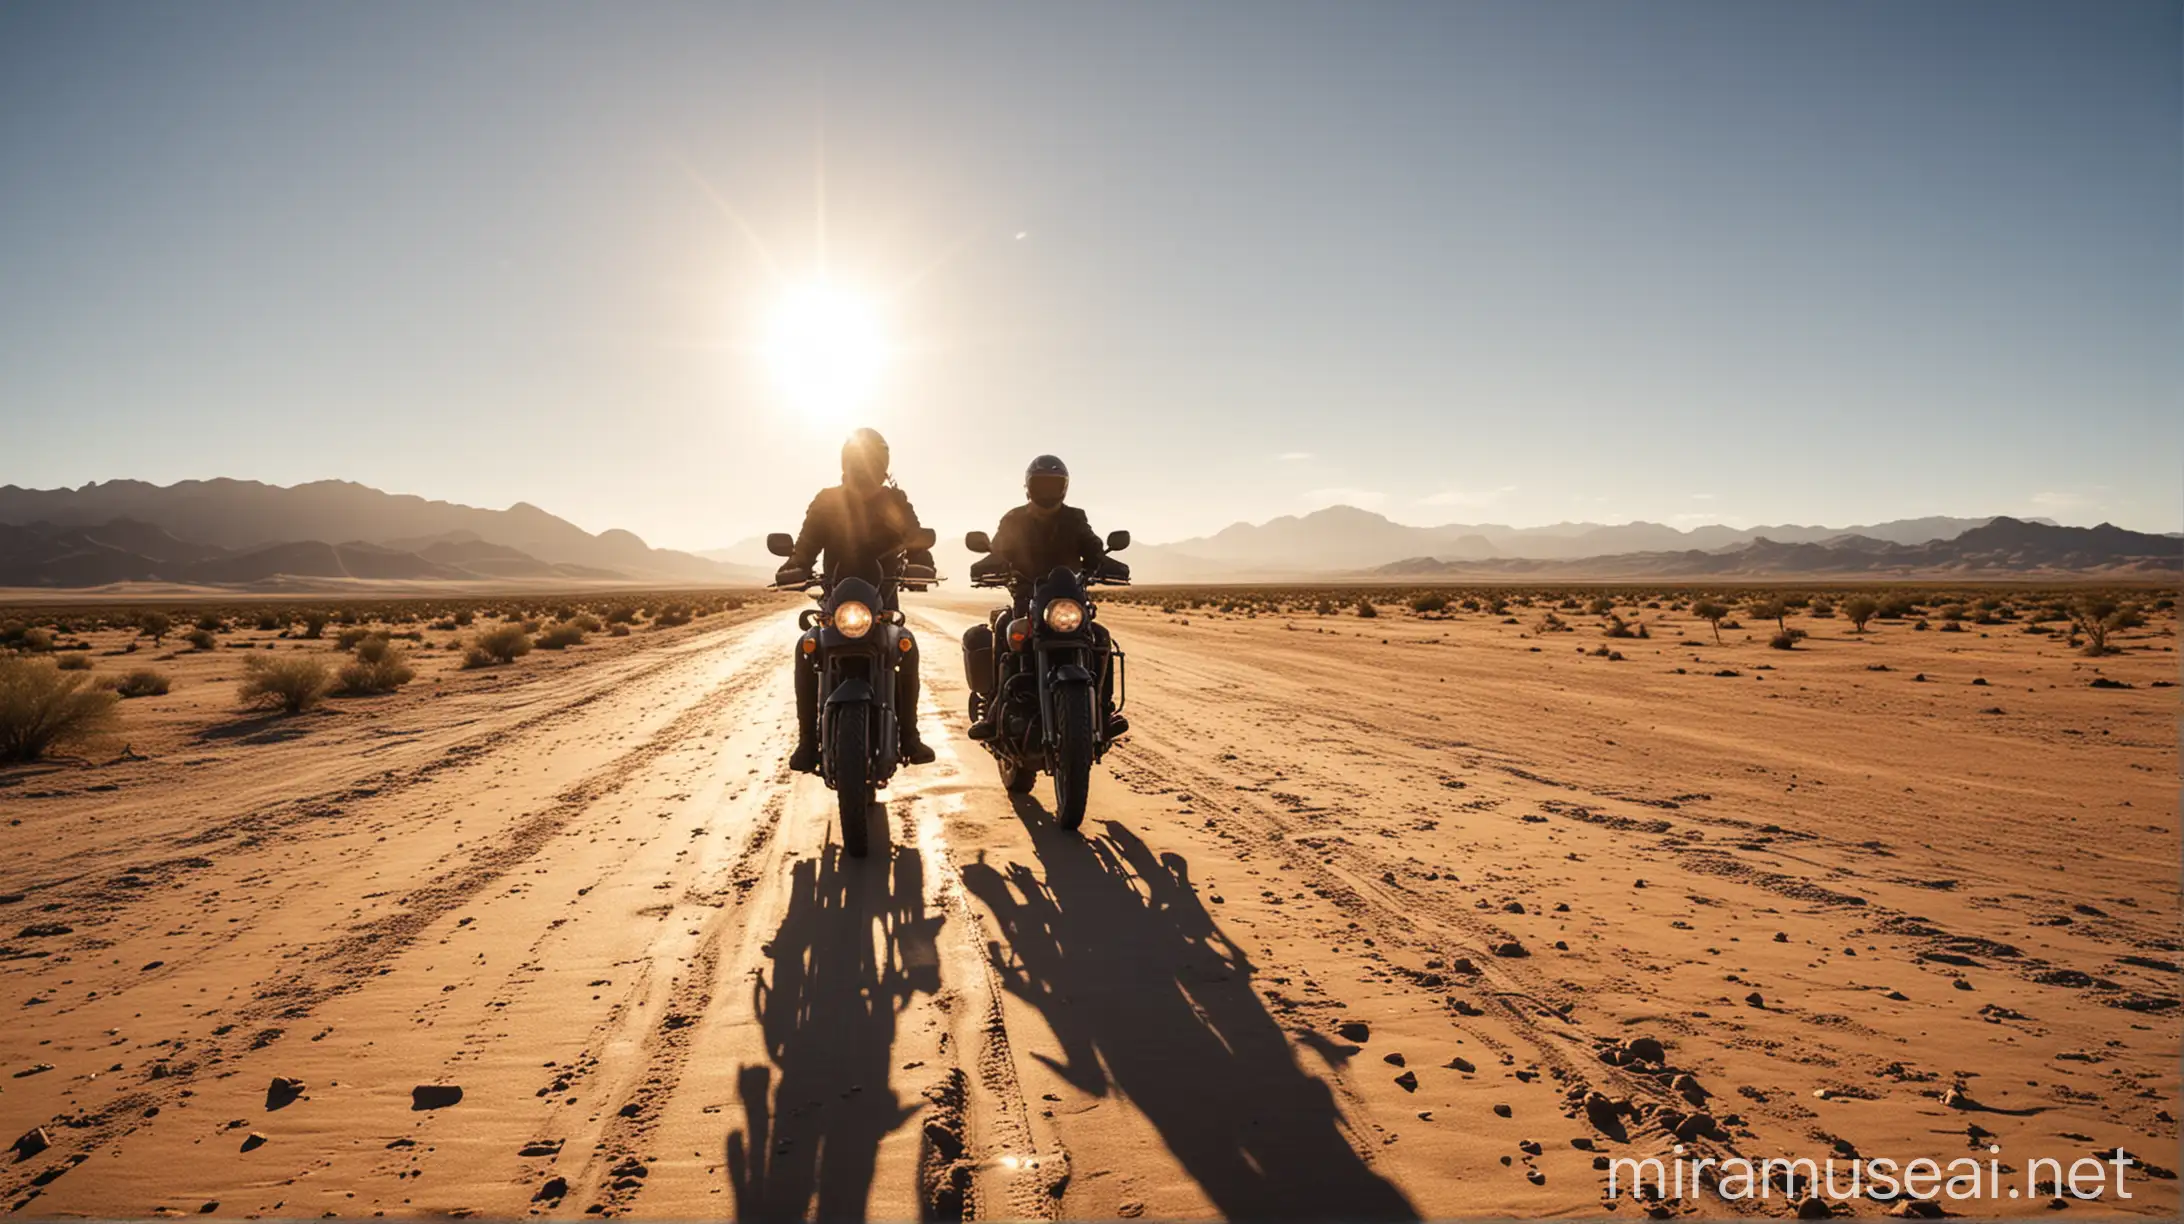 Motorcycle Traveler Resting in Desert Oasis Under Sunny Sky